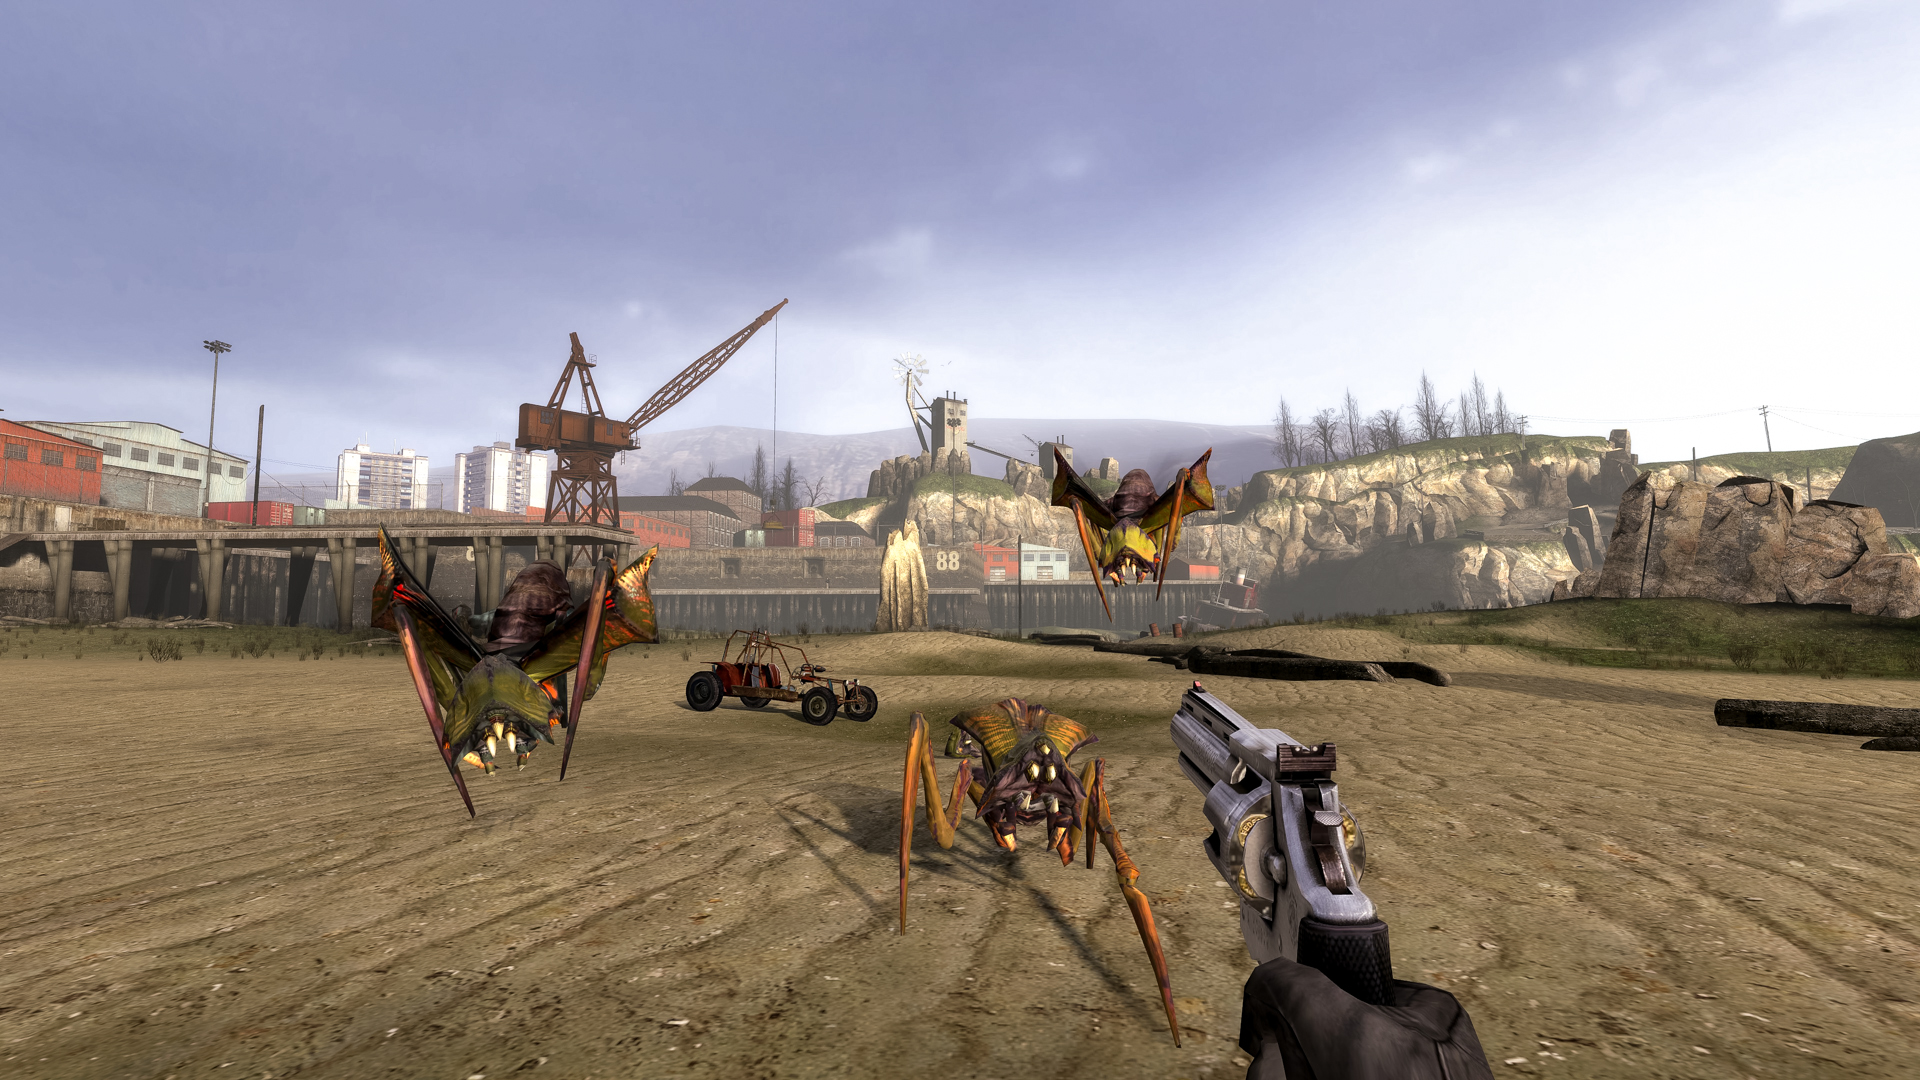 Half-Life 2 on Steam